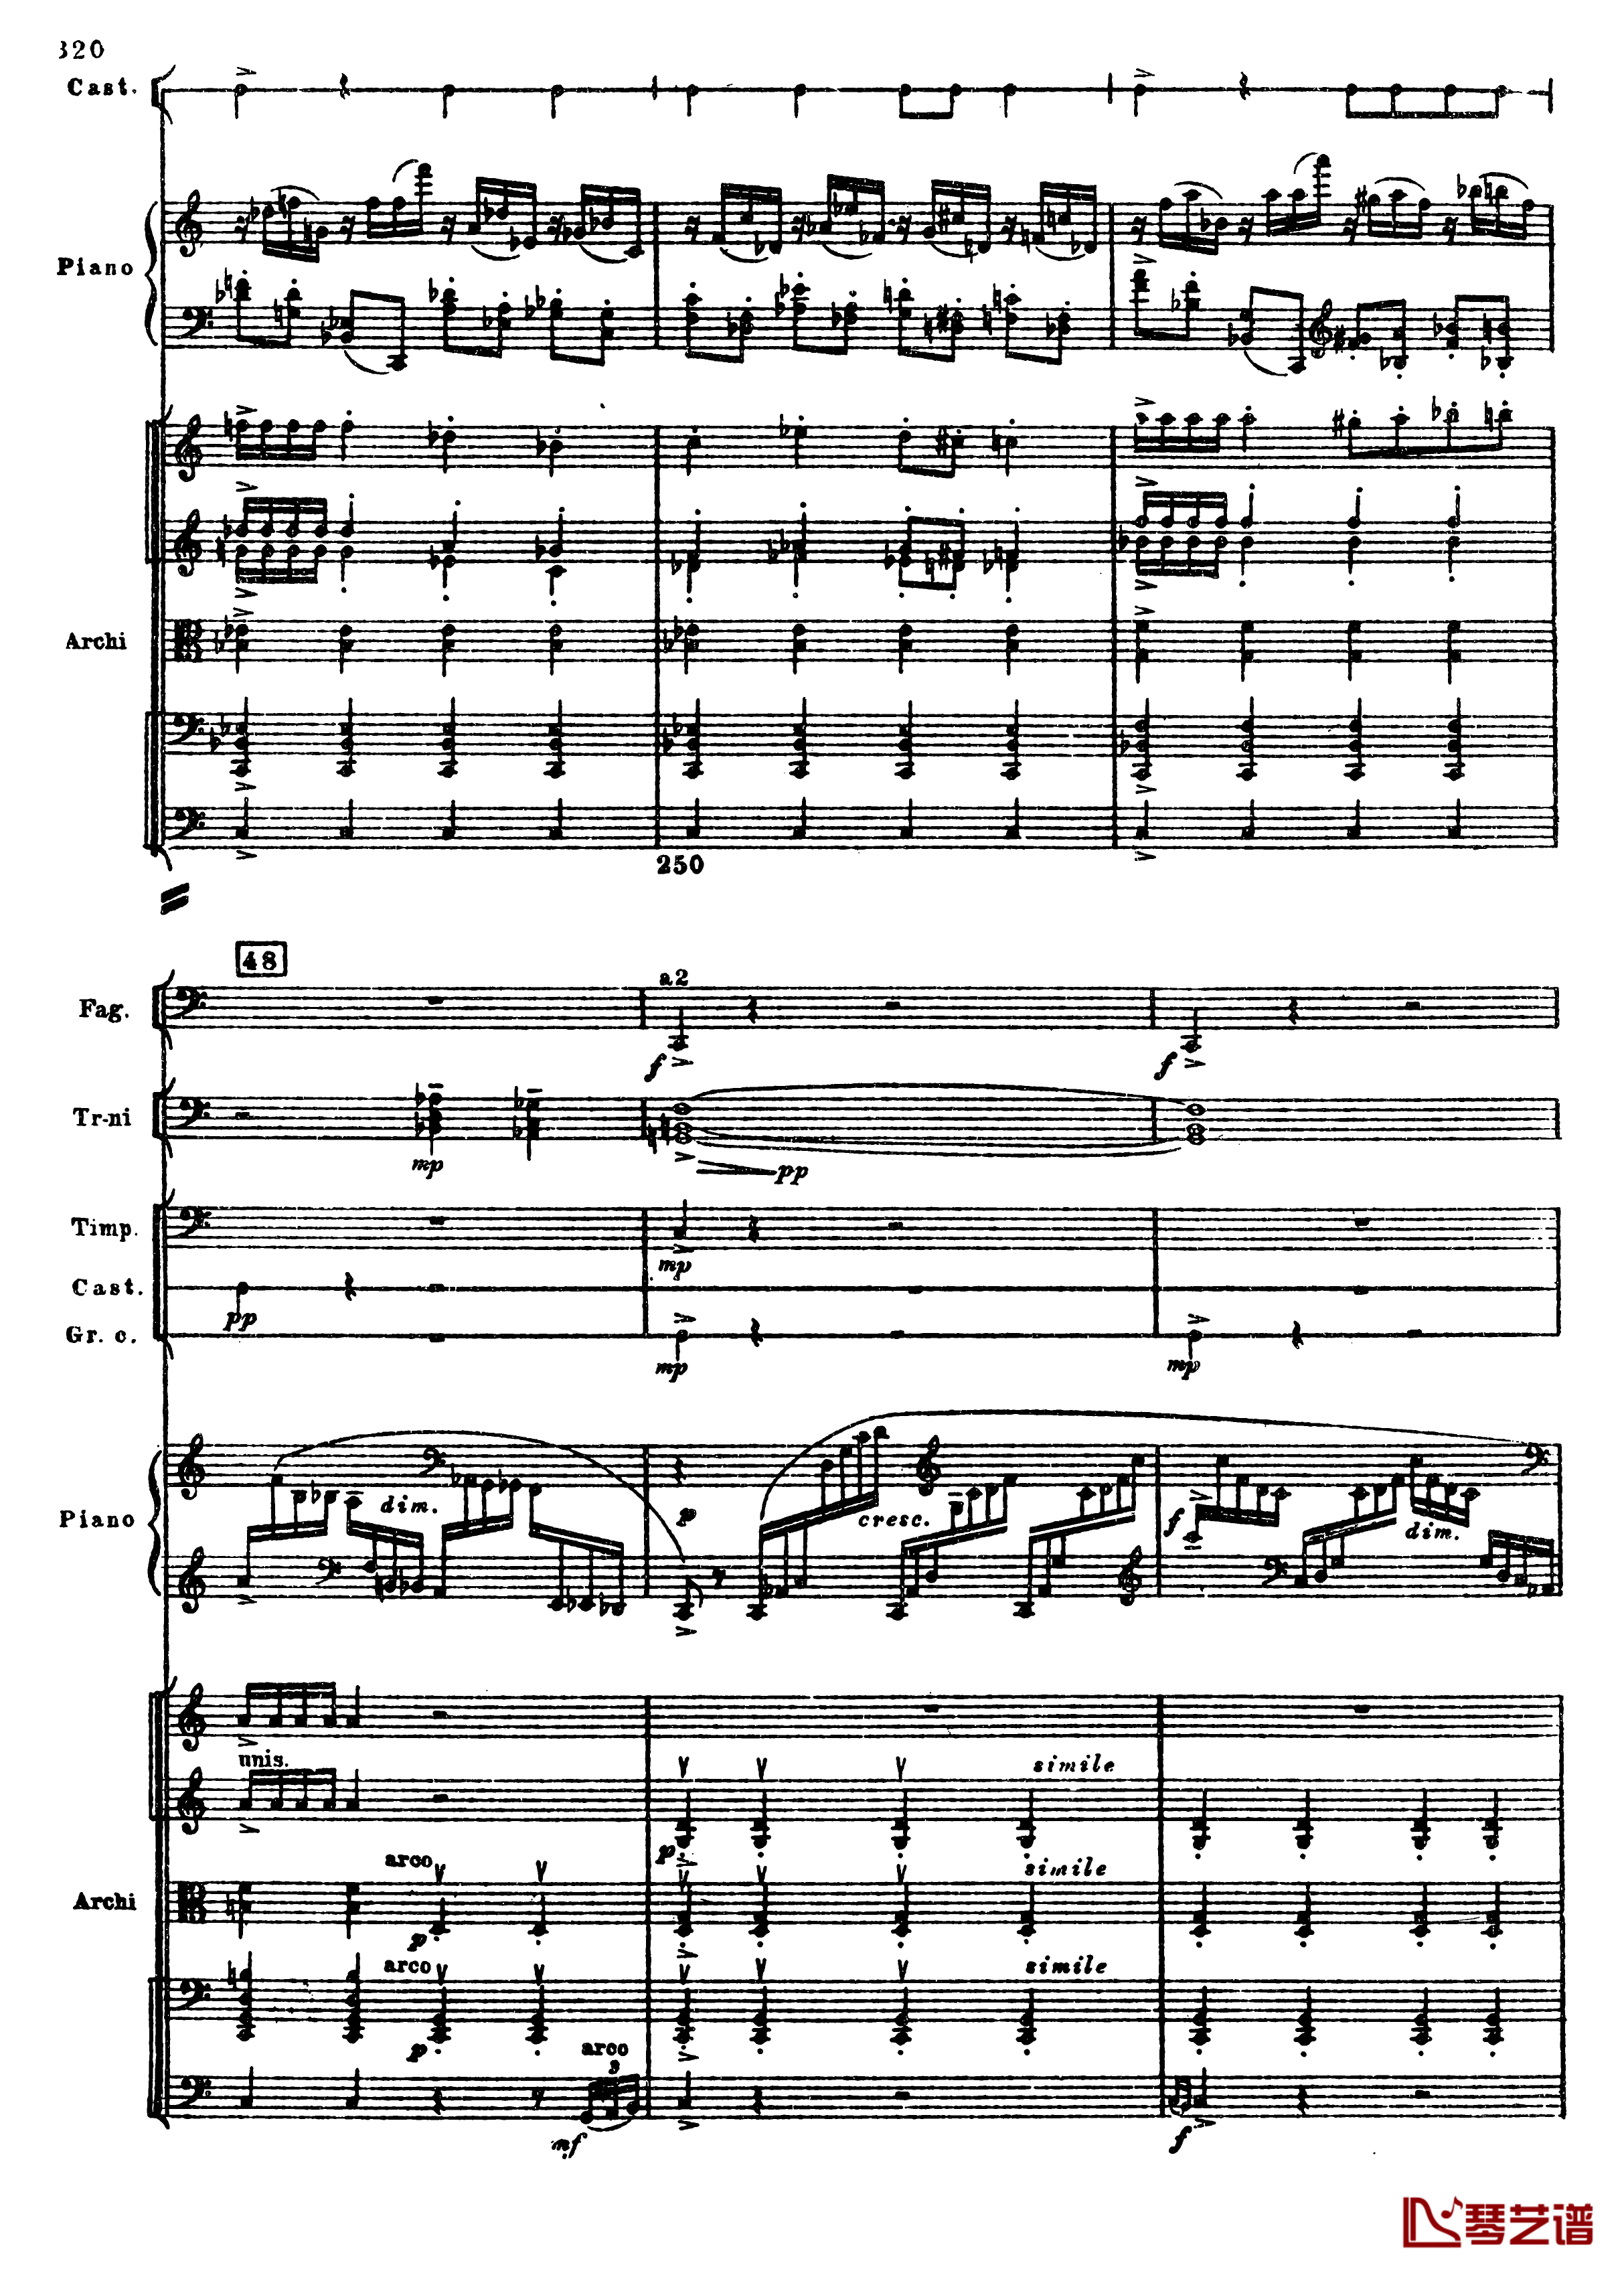 普罗科菲耶夫第三钢琴协奏曲钢琴谱-总谱-普罗科非耶夫52